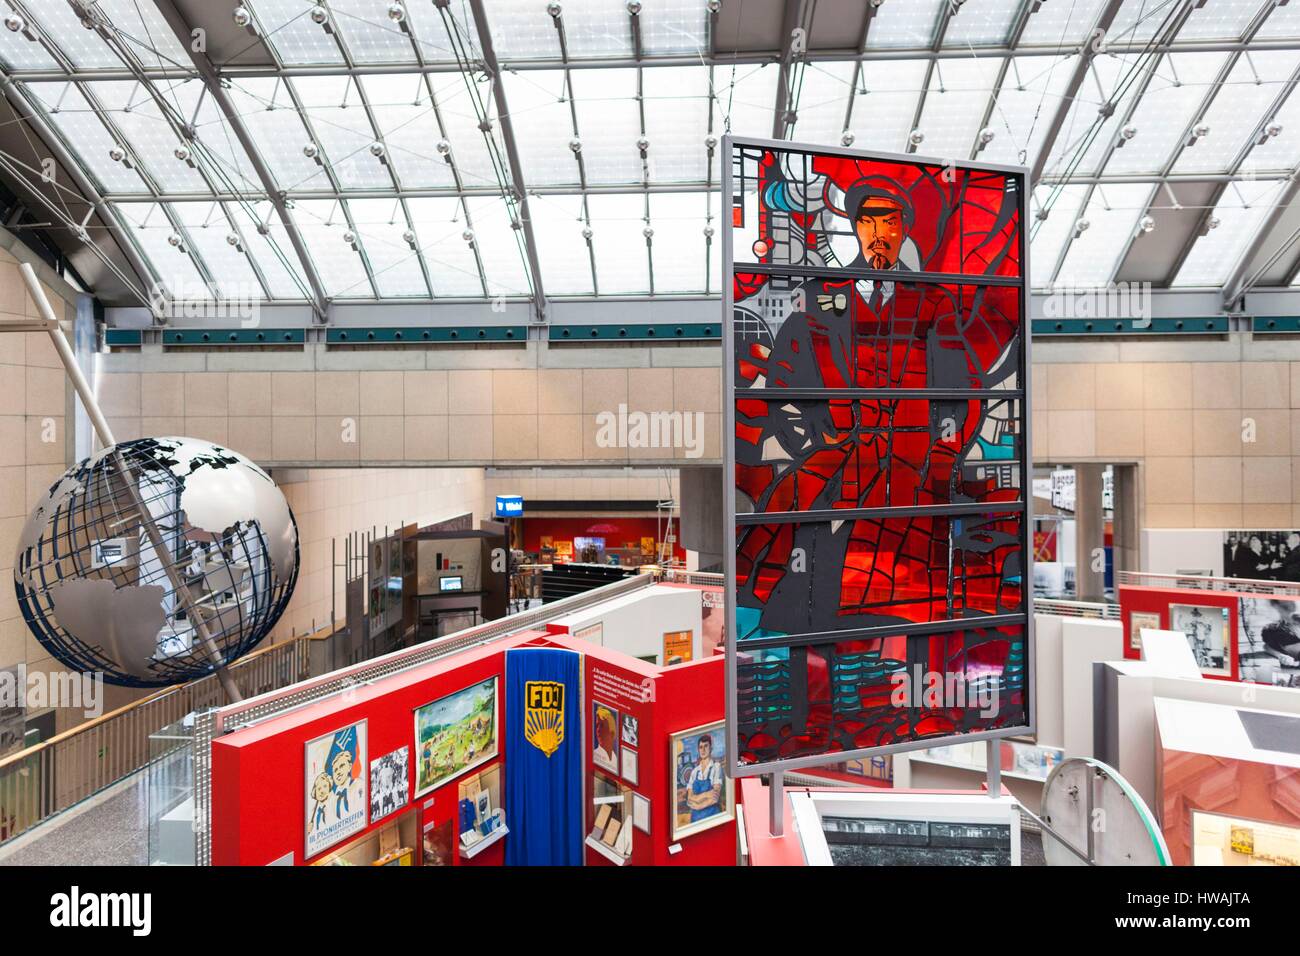 Allemagne, Nordrhein-Westfalen, Bonn, Museumsmeile, Musée de la République fédérale d'Allemagne, vitrail avec Vladimir Lénine Banque D'Images